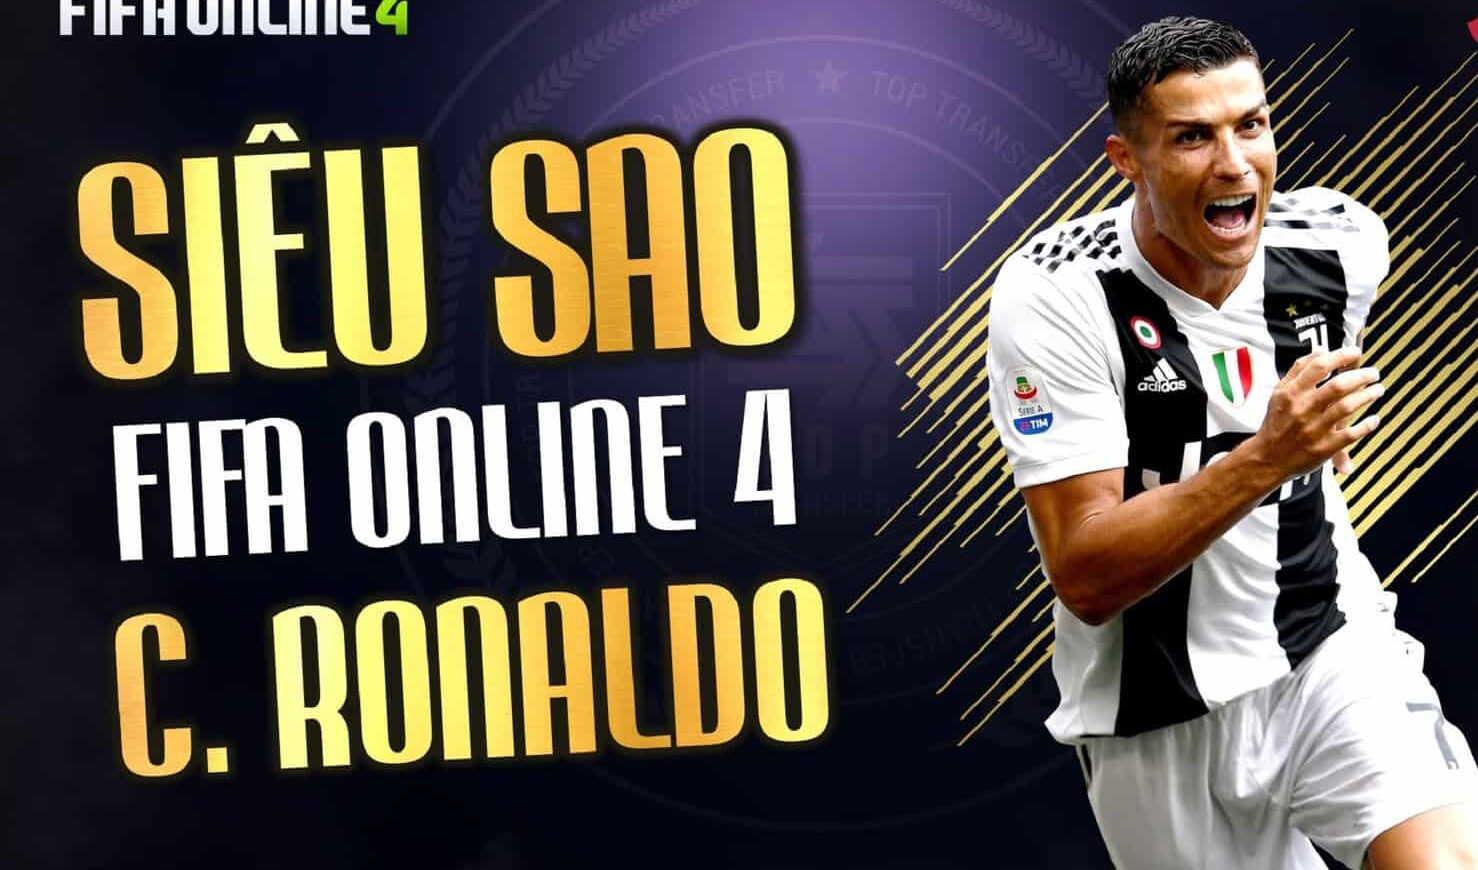 Tầm ảnh hưởng Ronaldo TT trong FiFa Online 4